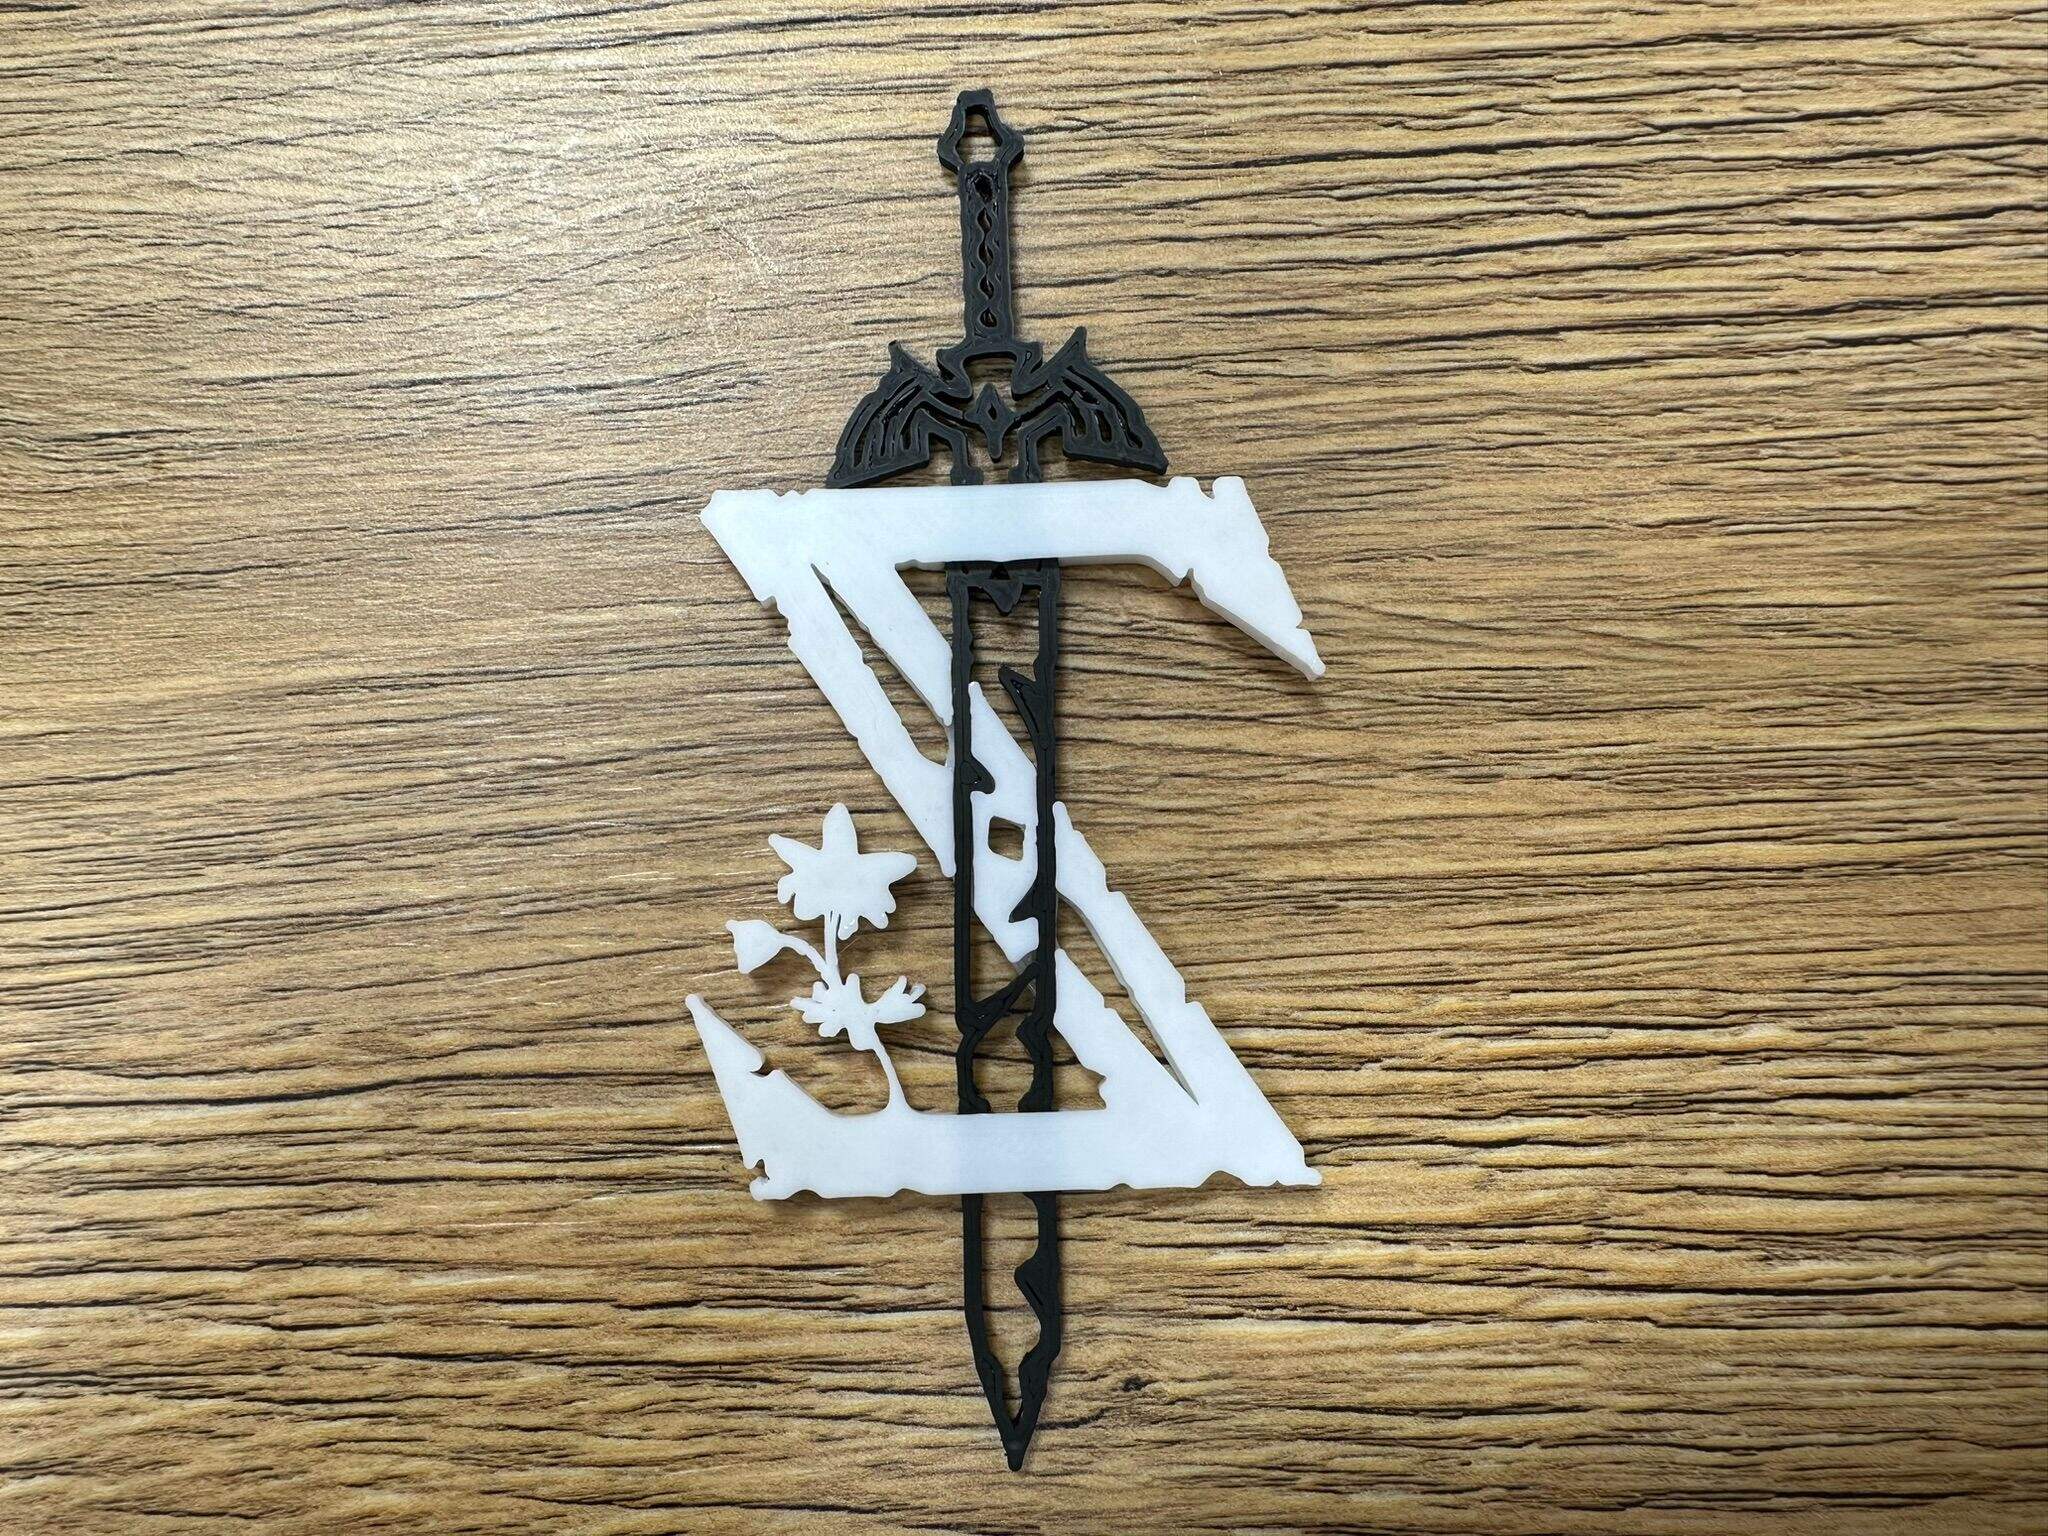 Zelda logo with master sword